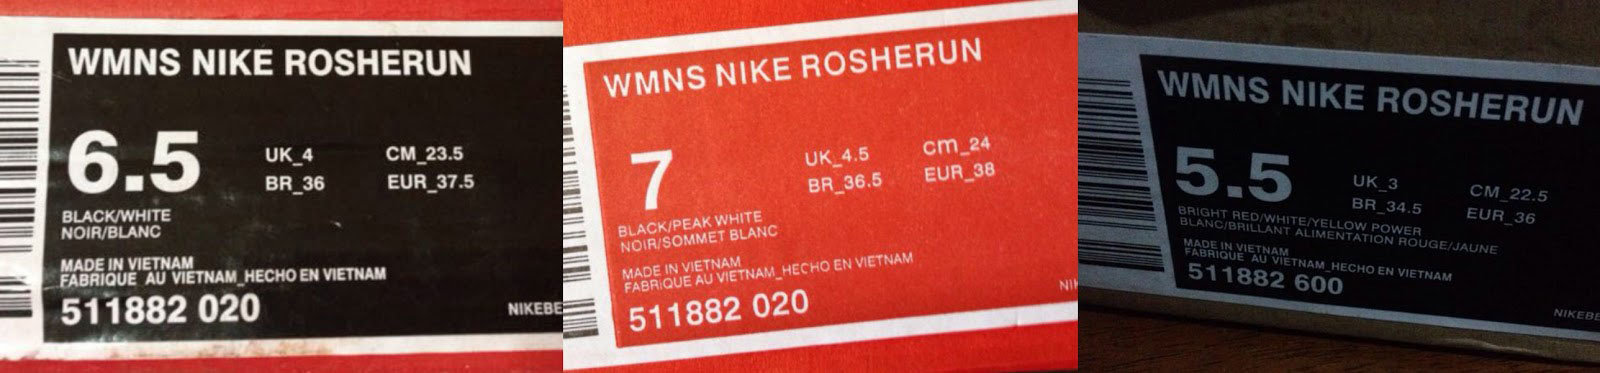 Информация на коробке поддельных кроссовок Nike Roshe One